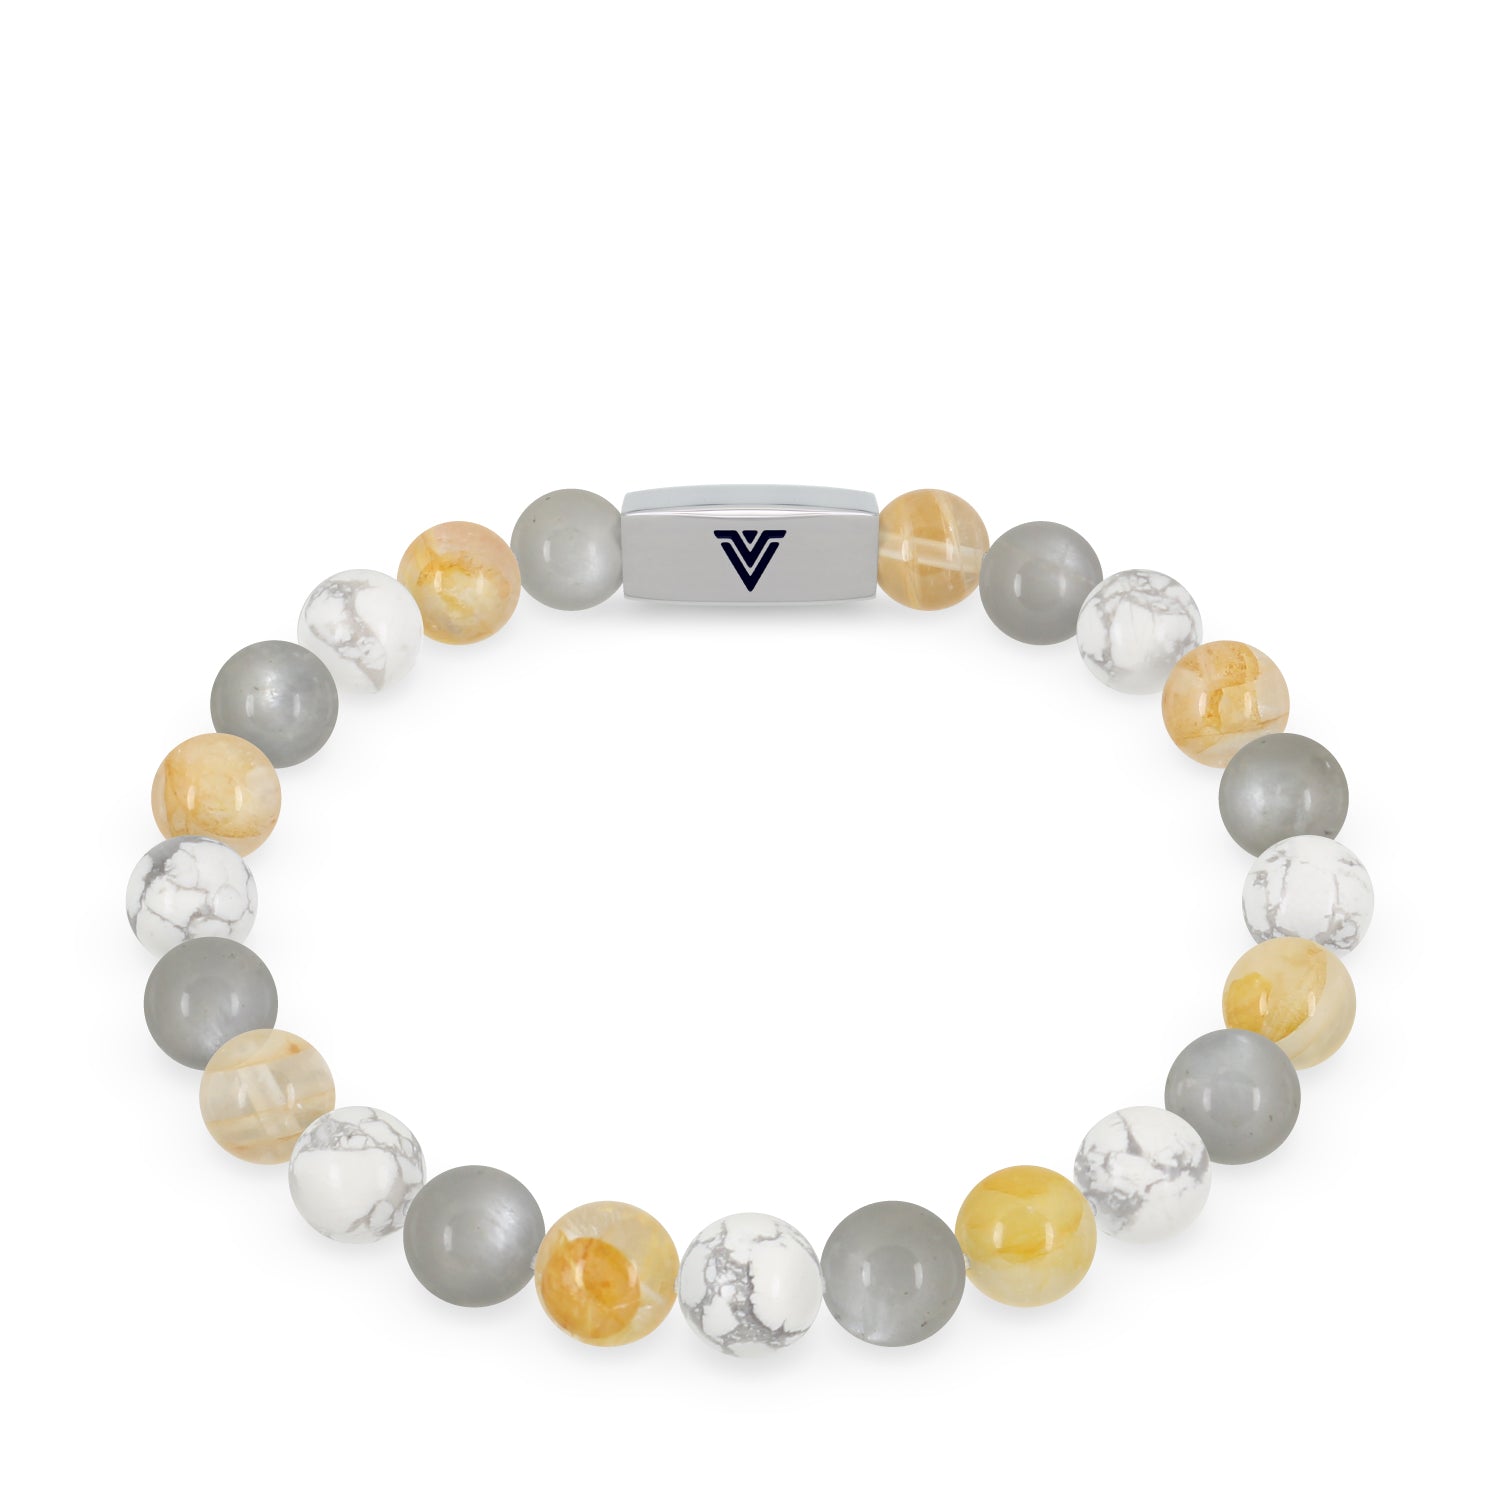 Gemini Zodiac Gemstone Crystal Bracelet - Etsy | Crystal bracelets, Gemini  zodiac, Zodiac bracelet